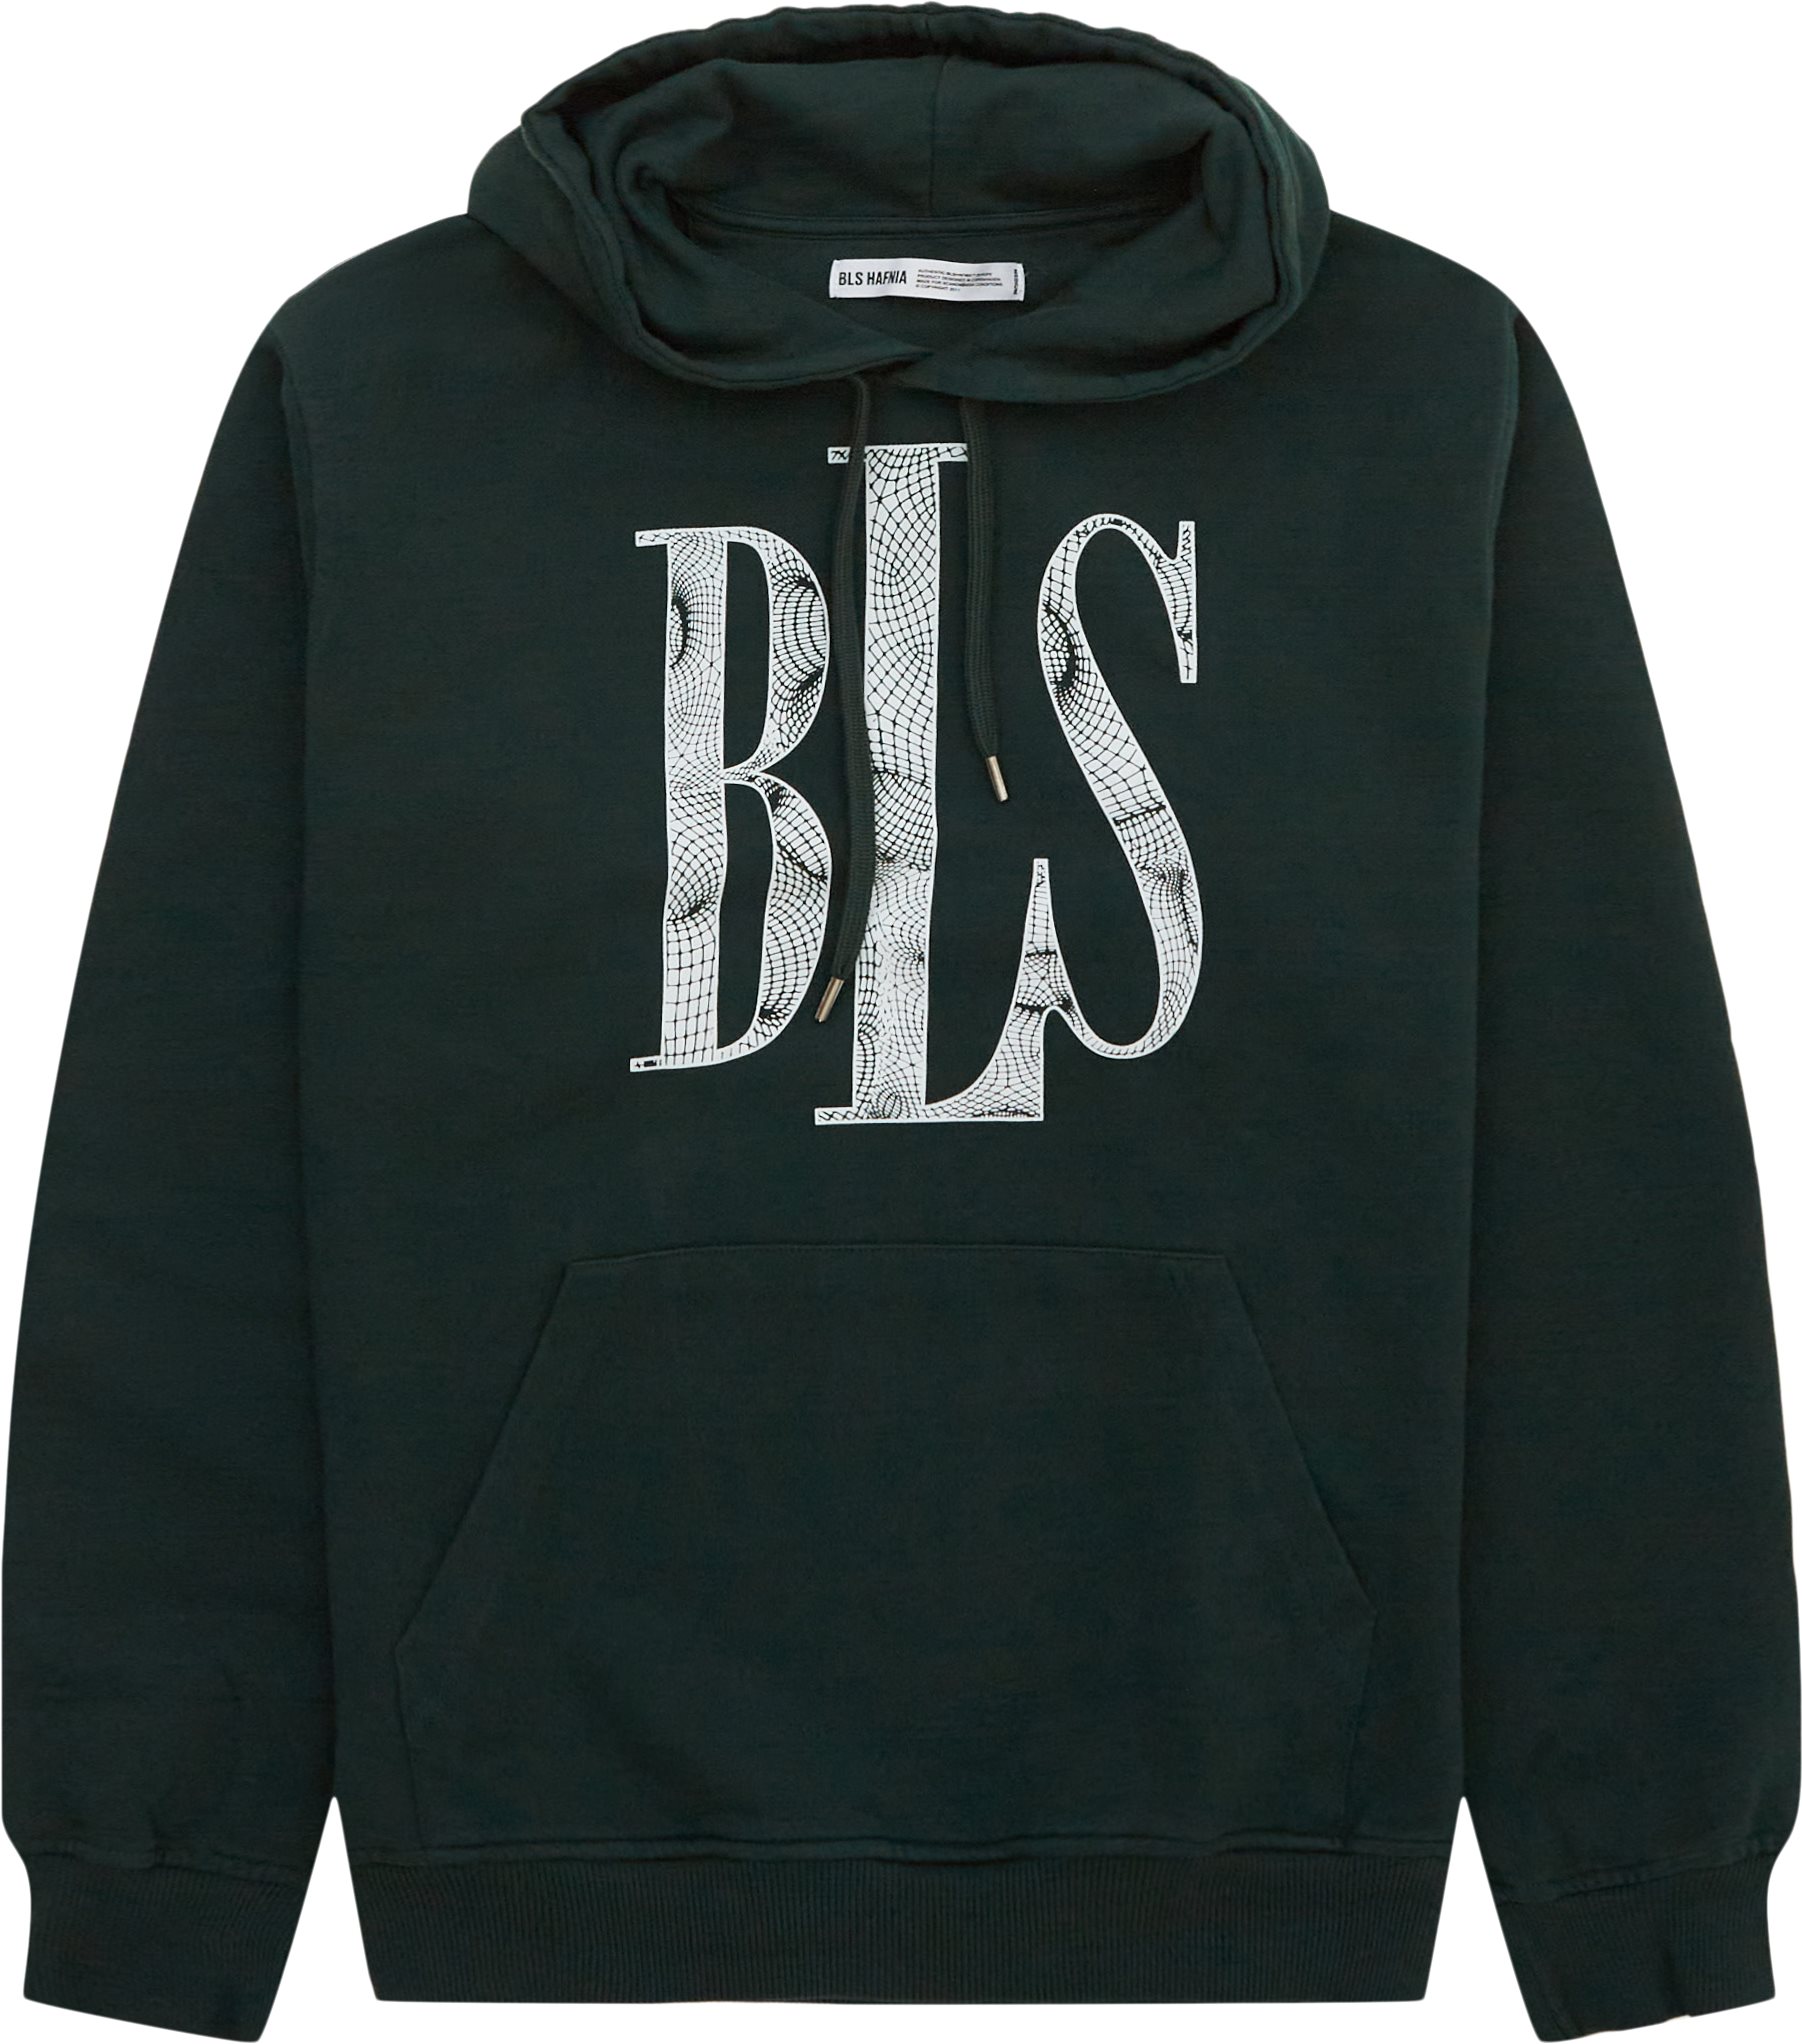 BLS Sweatshirts NEO HOOD 202308097 Green